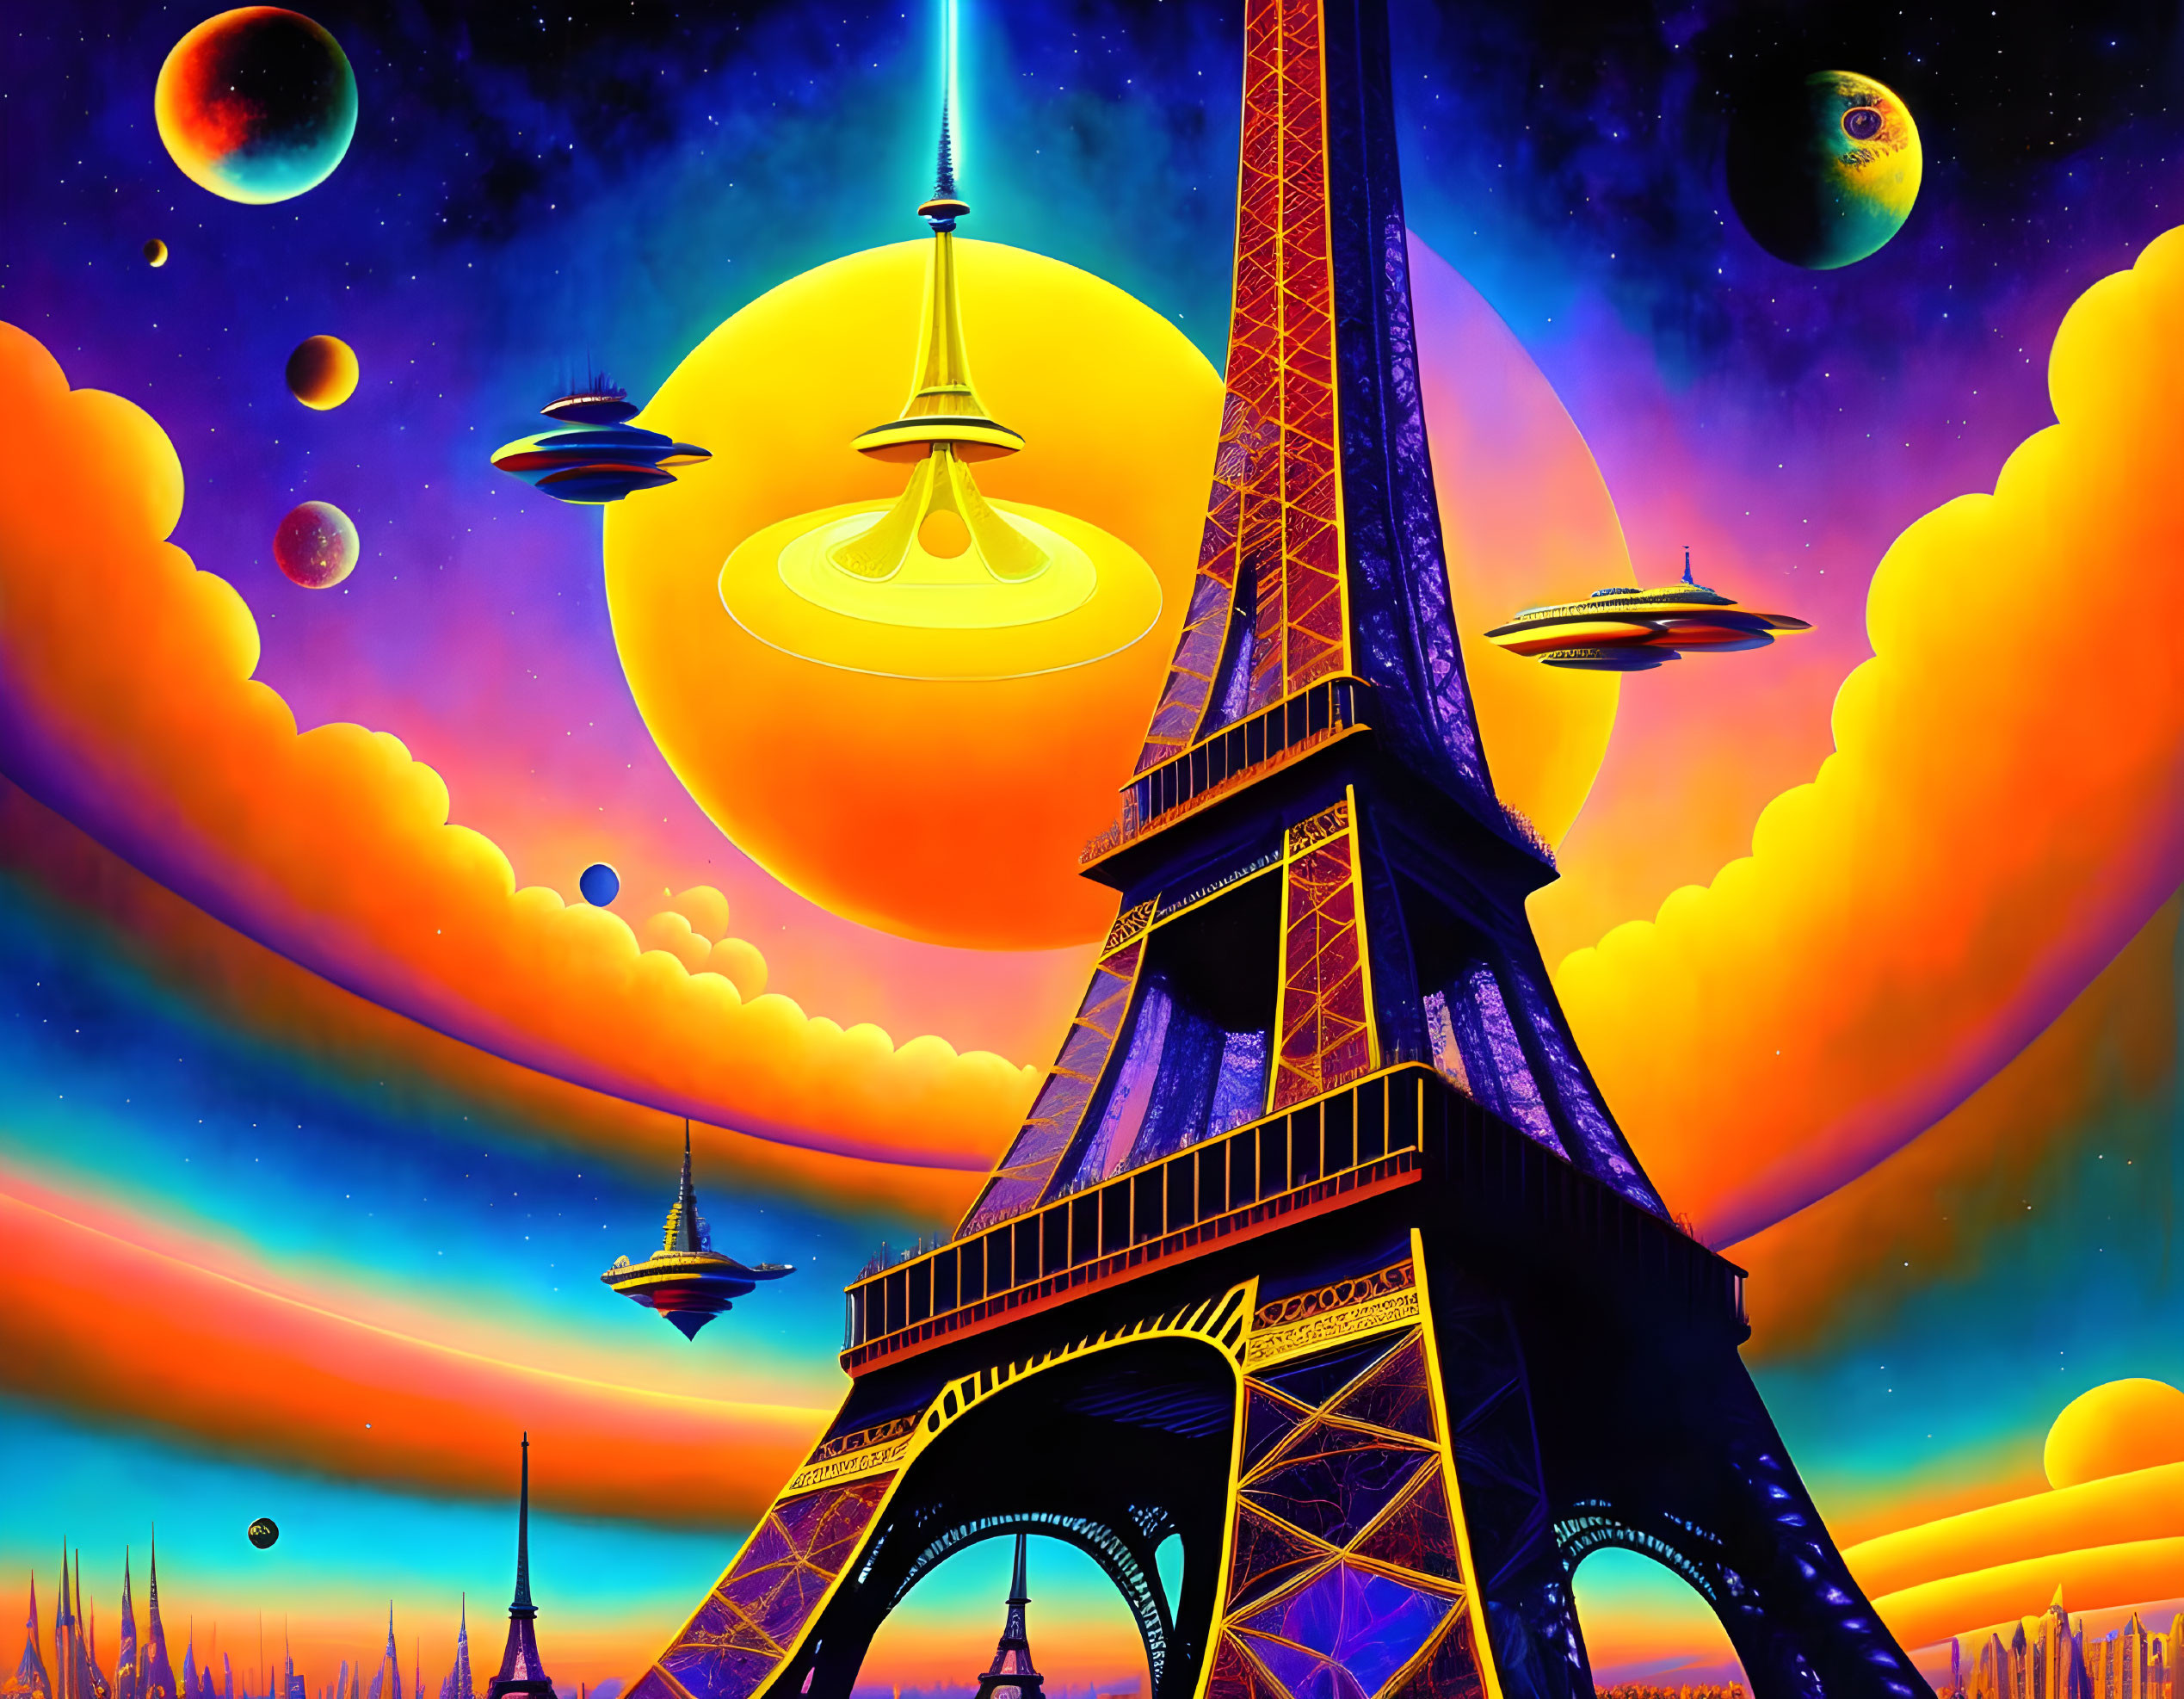 The Eiffel Tower as a spaceship